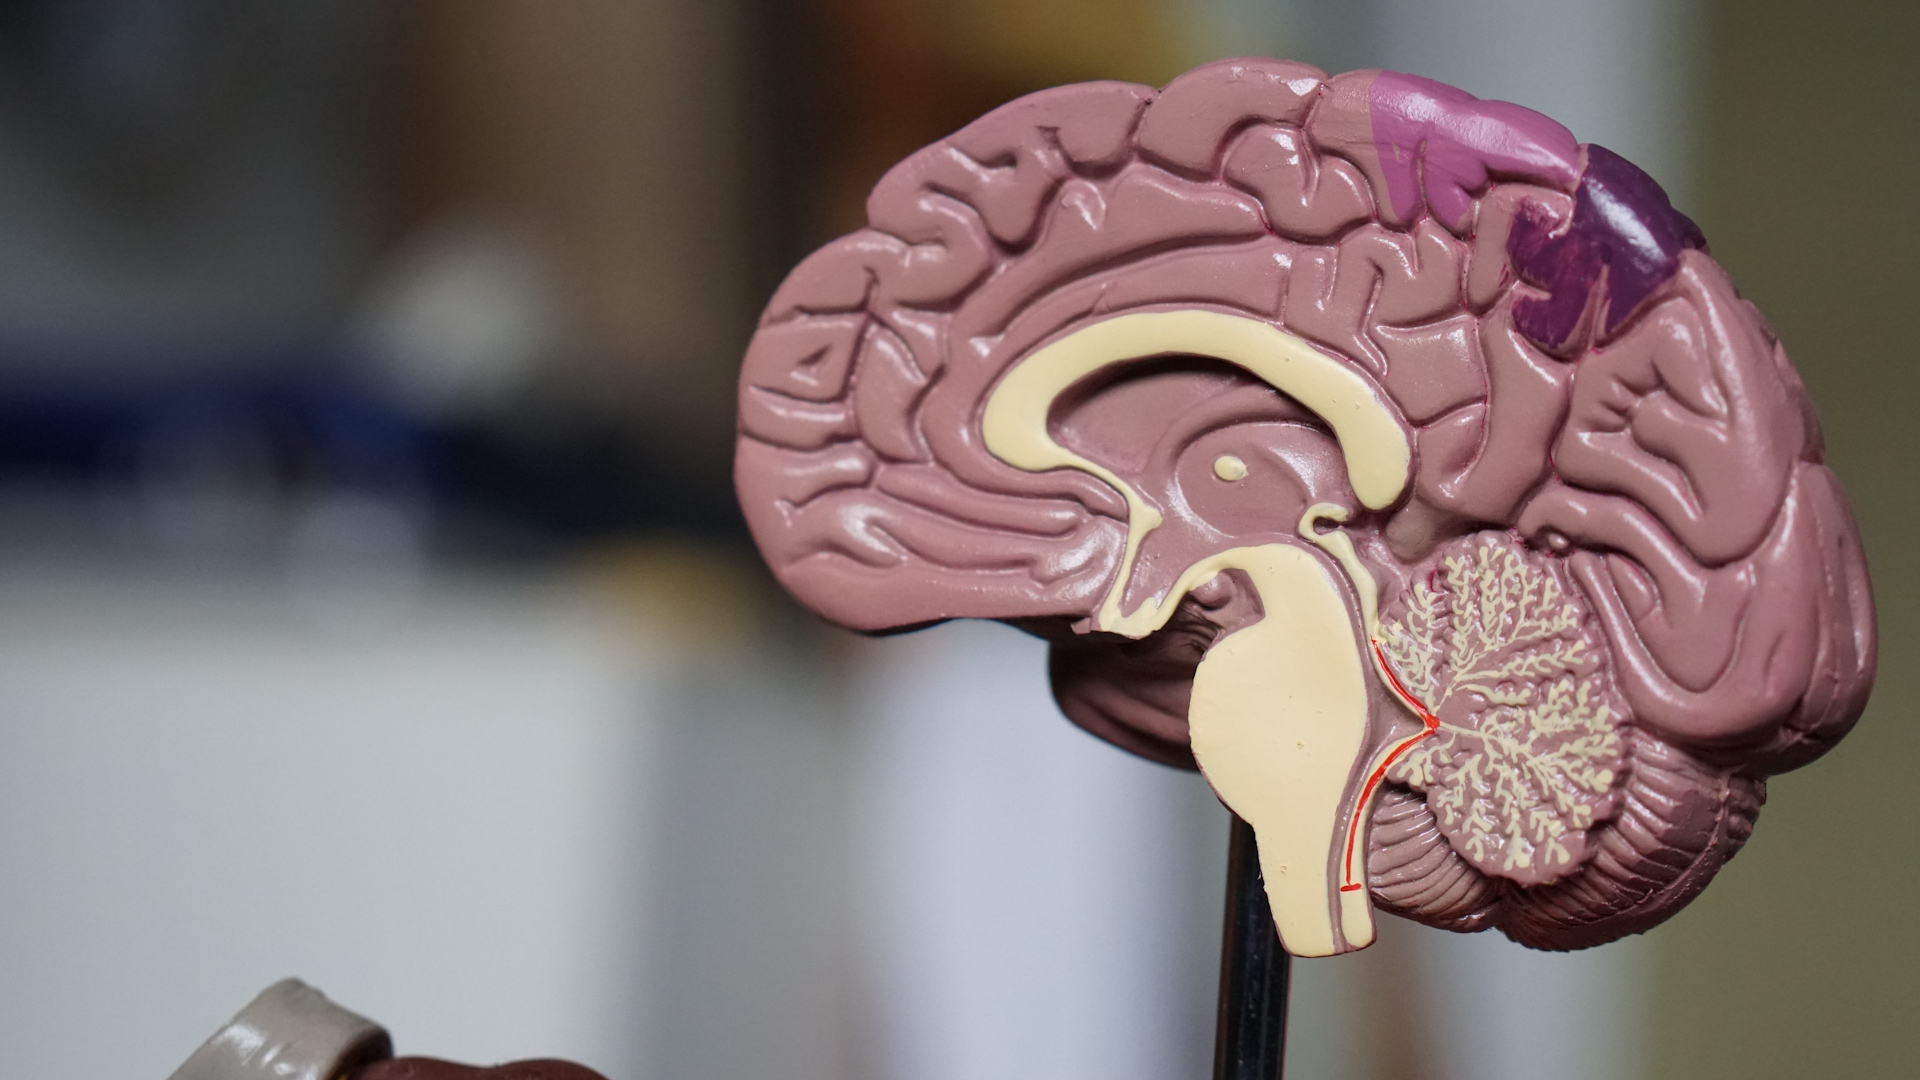 Аневризма сосудов головного мозга: симптомы и риски для жизни | Телеканал  Санкт-Петербург